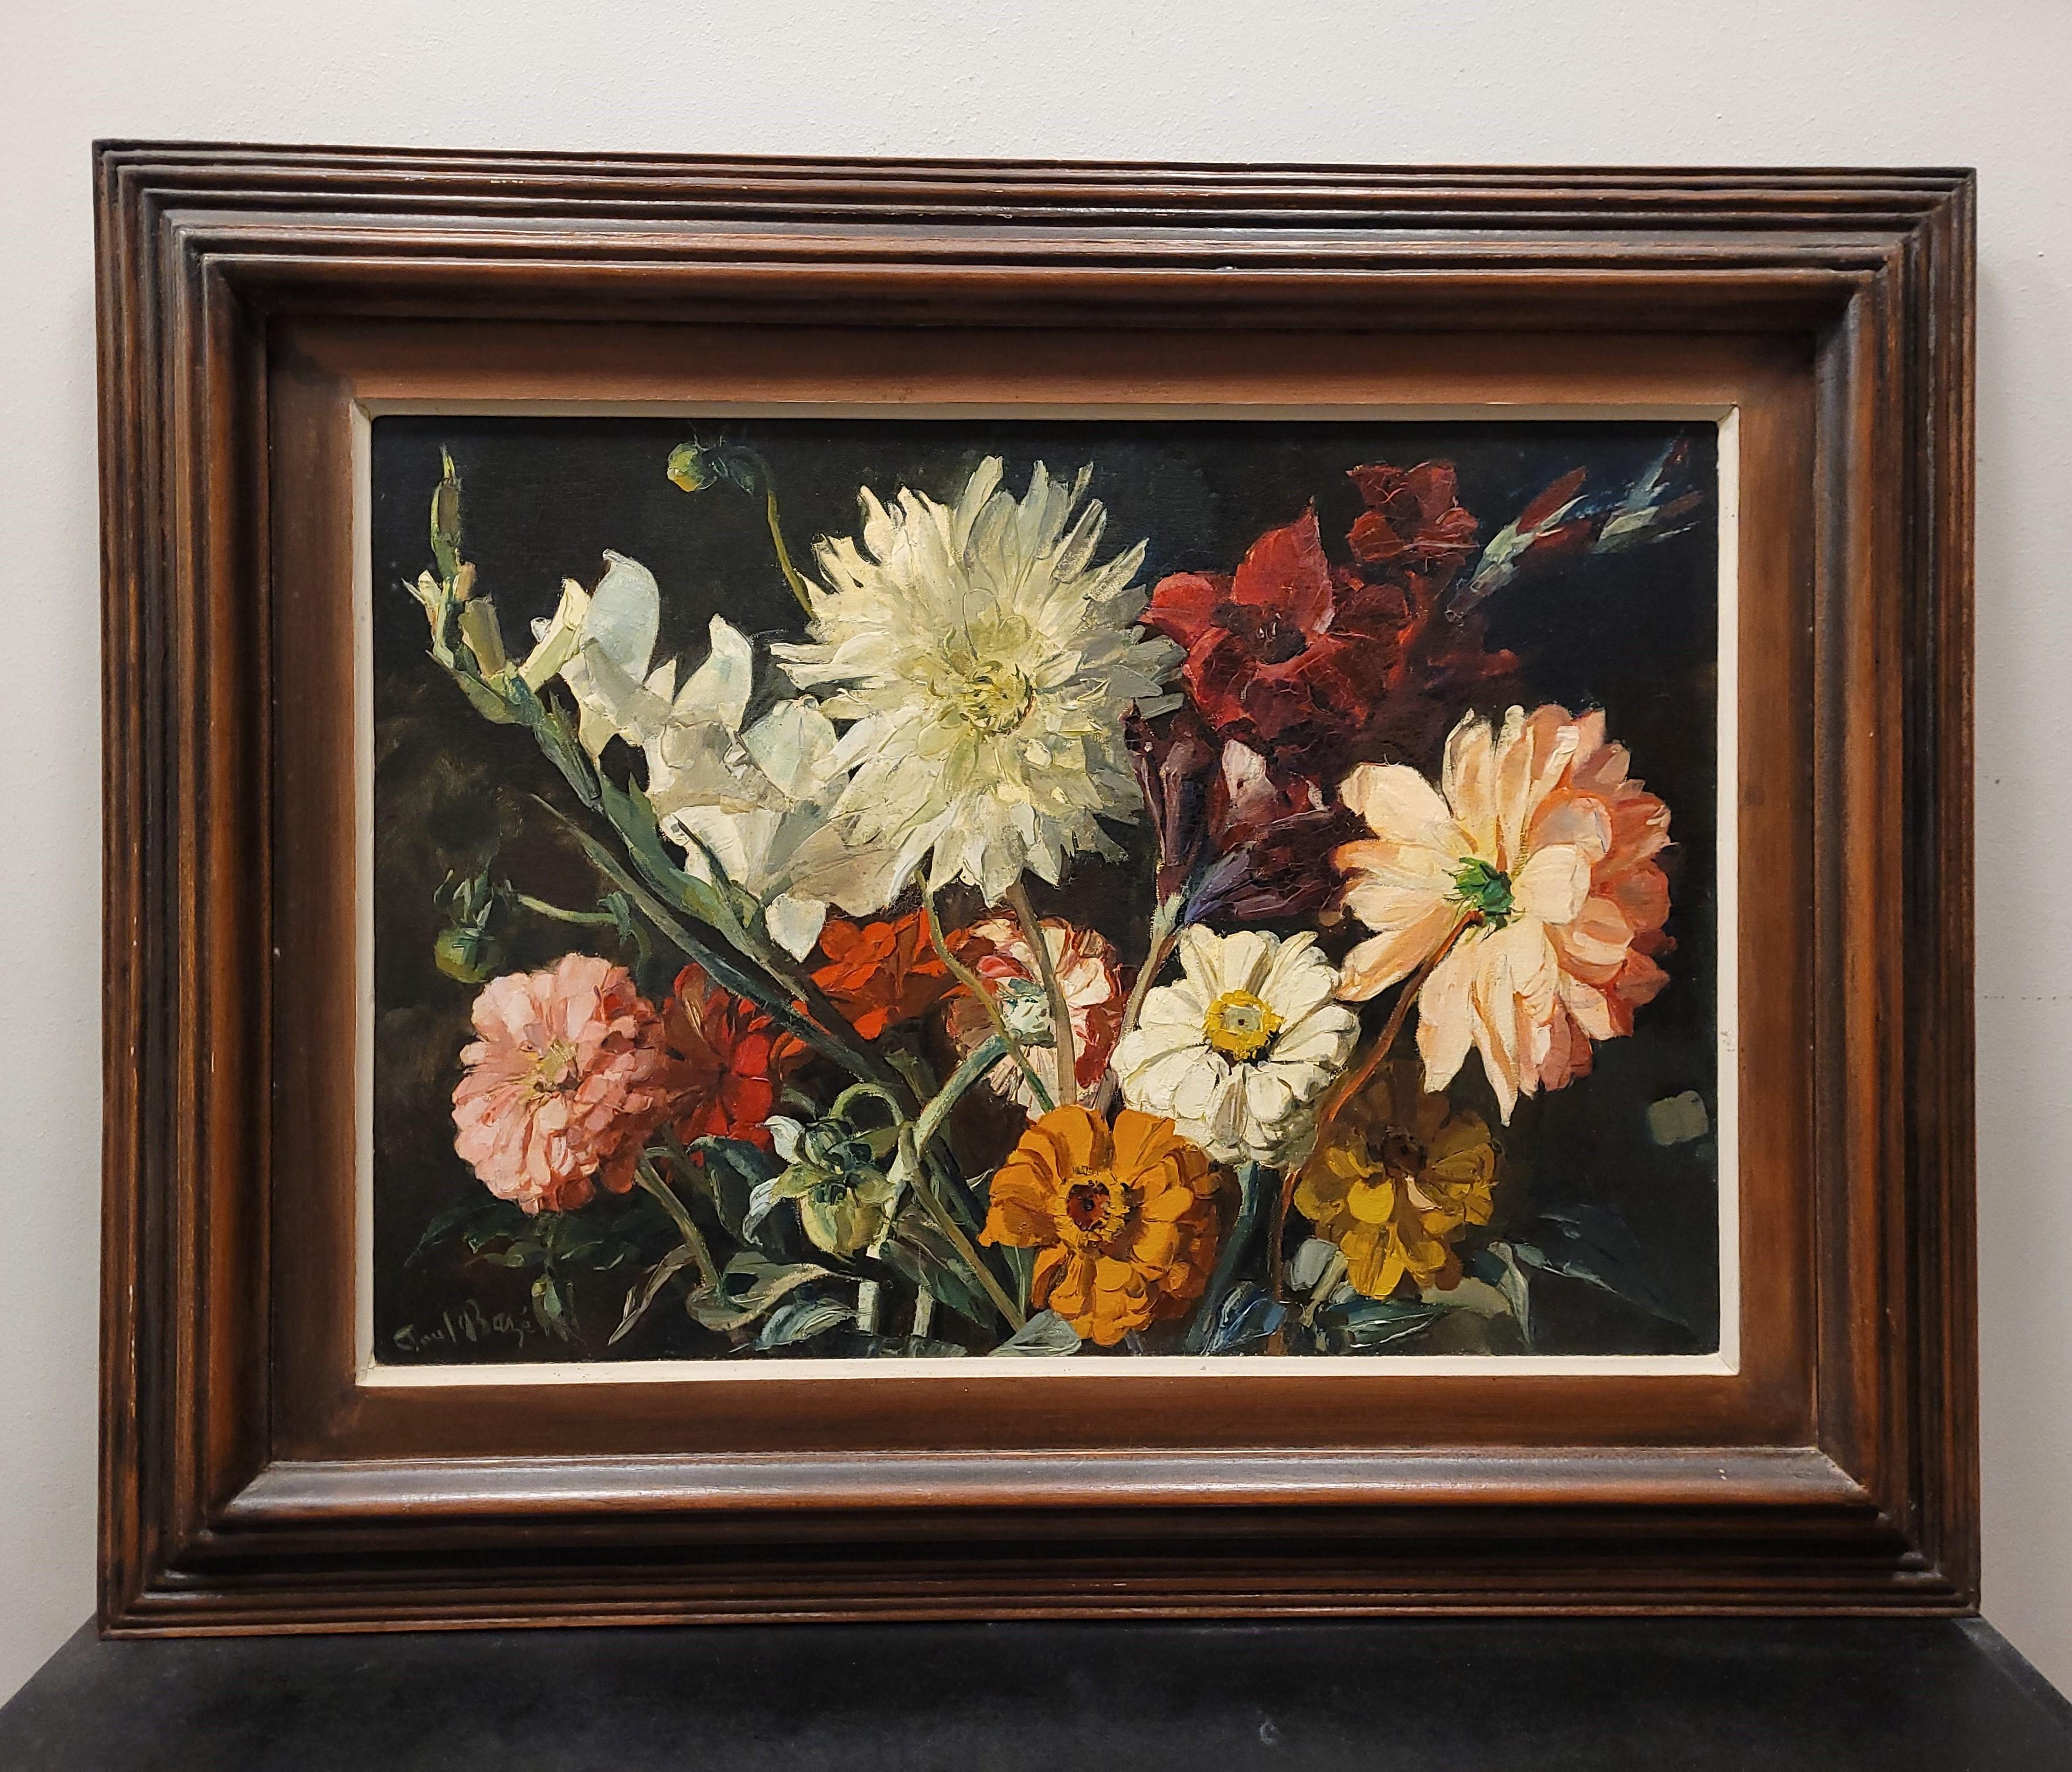 Beeindruckend und sehr schön  Öl auf Tafel von Paul Robert Bazé, einem Künstler französischer Herkunft. Es stellt ein Stillleben mit einem Blumenstrauß im Vordergrund auf einem dunklen Hintergrund dar. Es zeigt hauptsächlich Dahlien und Kamelien,